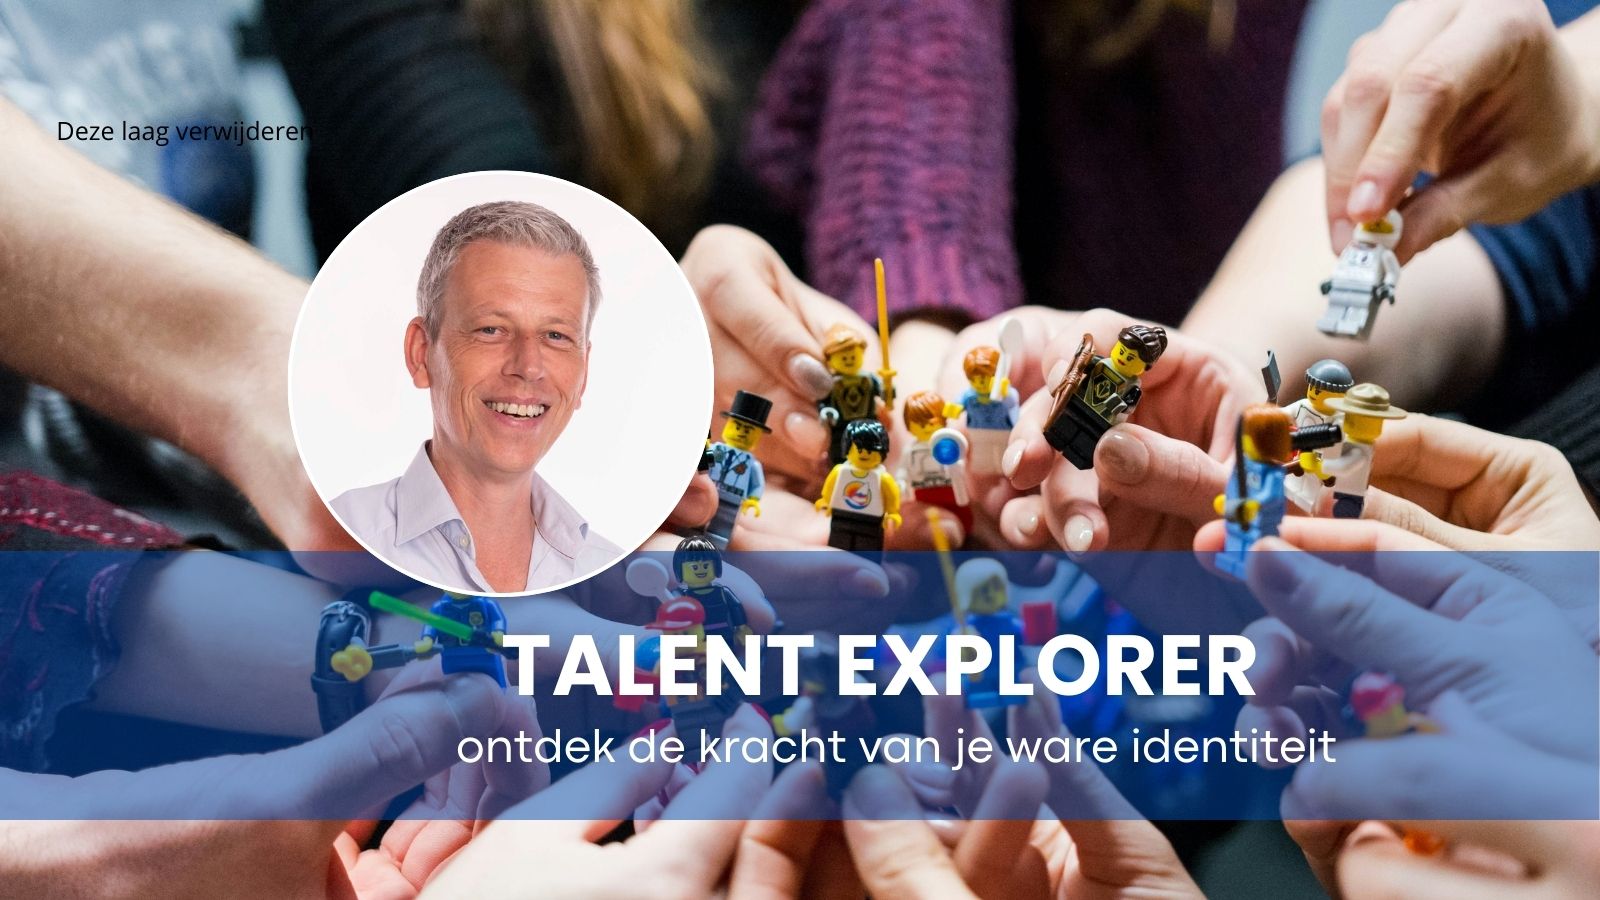 Personeelsuitje Enschede: Talent explorer